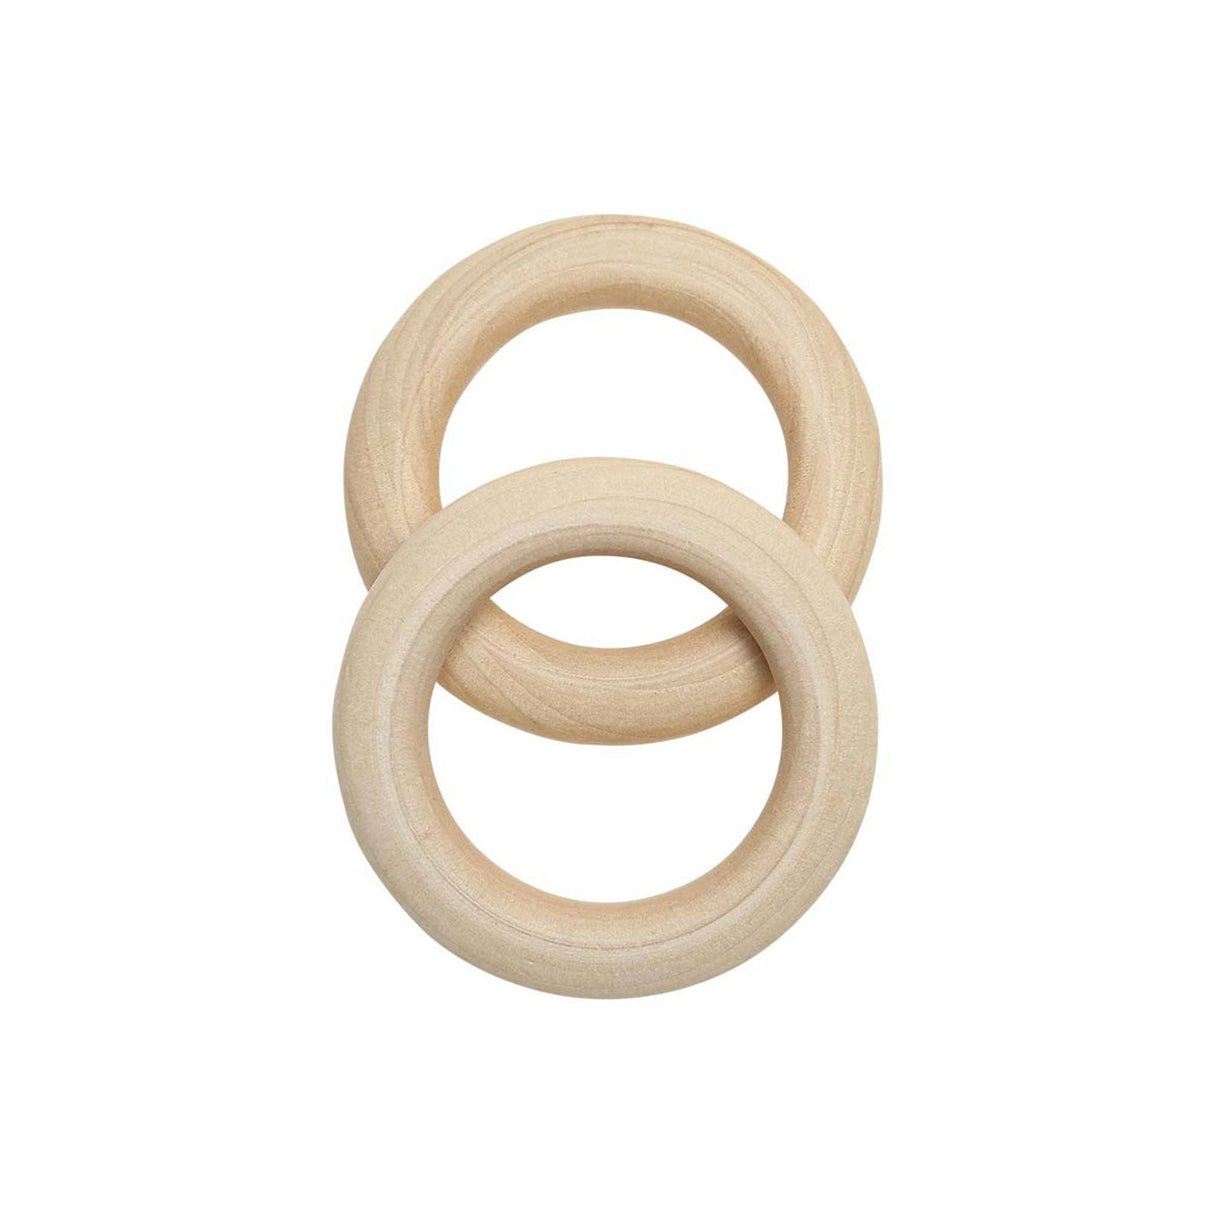 Go Handmade houten ringen 55 mm Ø 2 pc's.